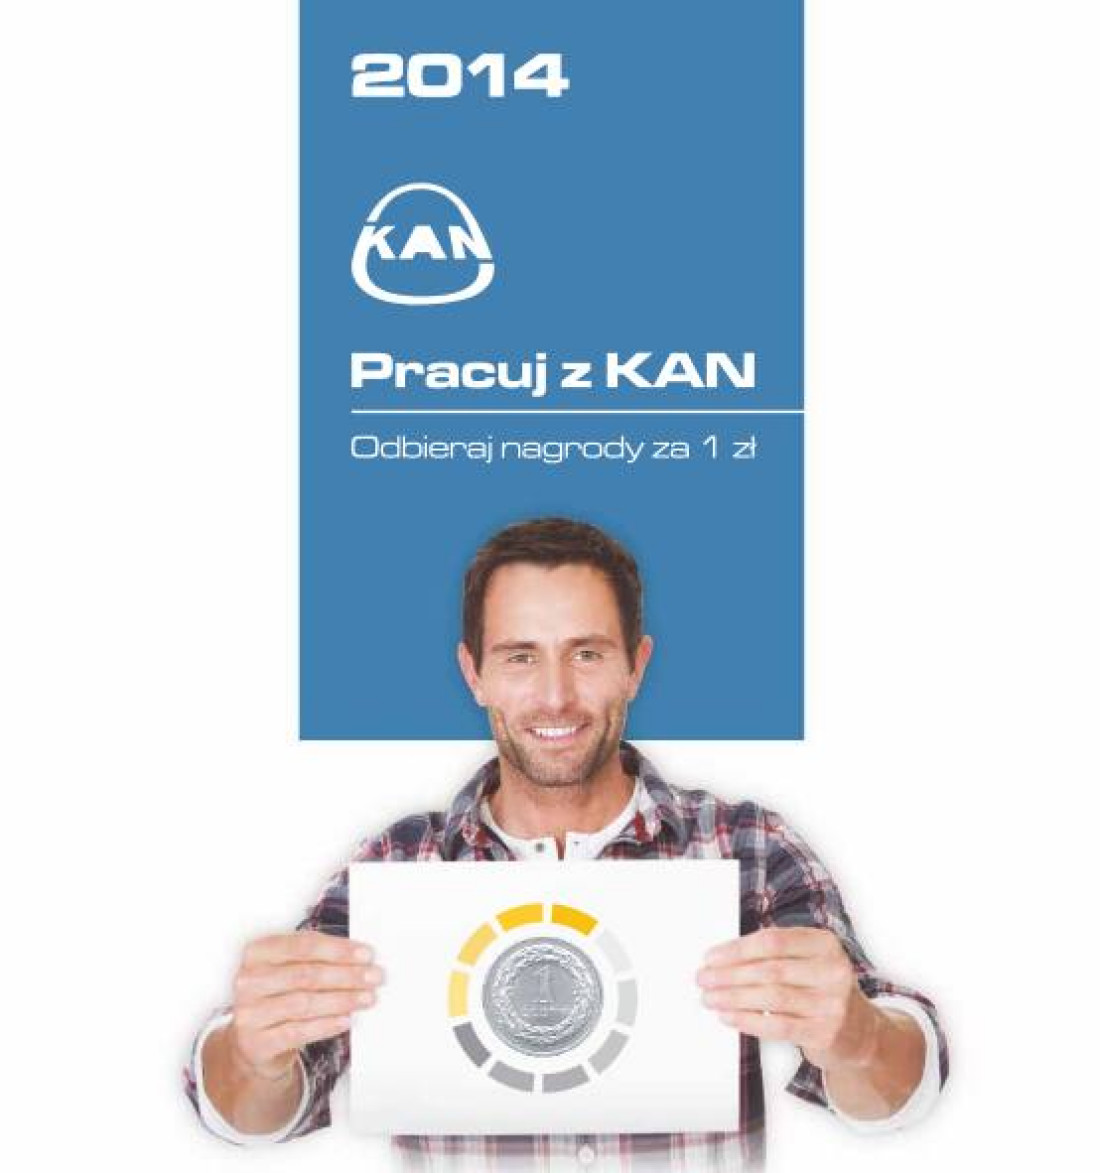 Pracuj z KAN 2014! - ostatnia szansa na nagrody